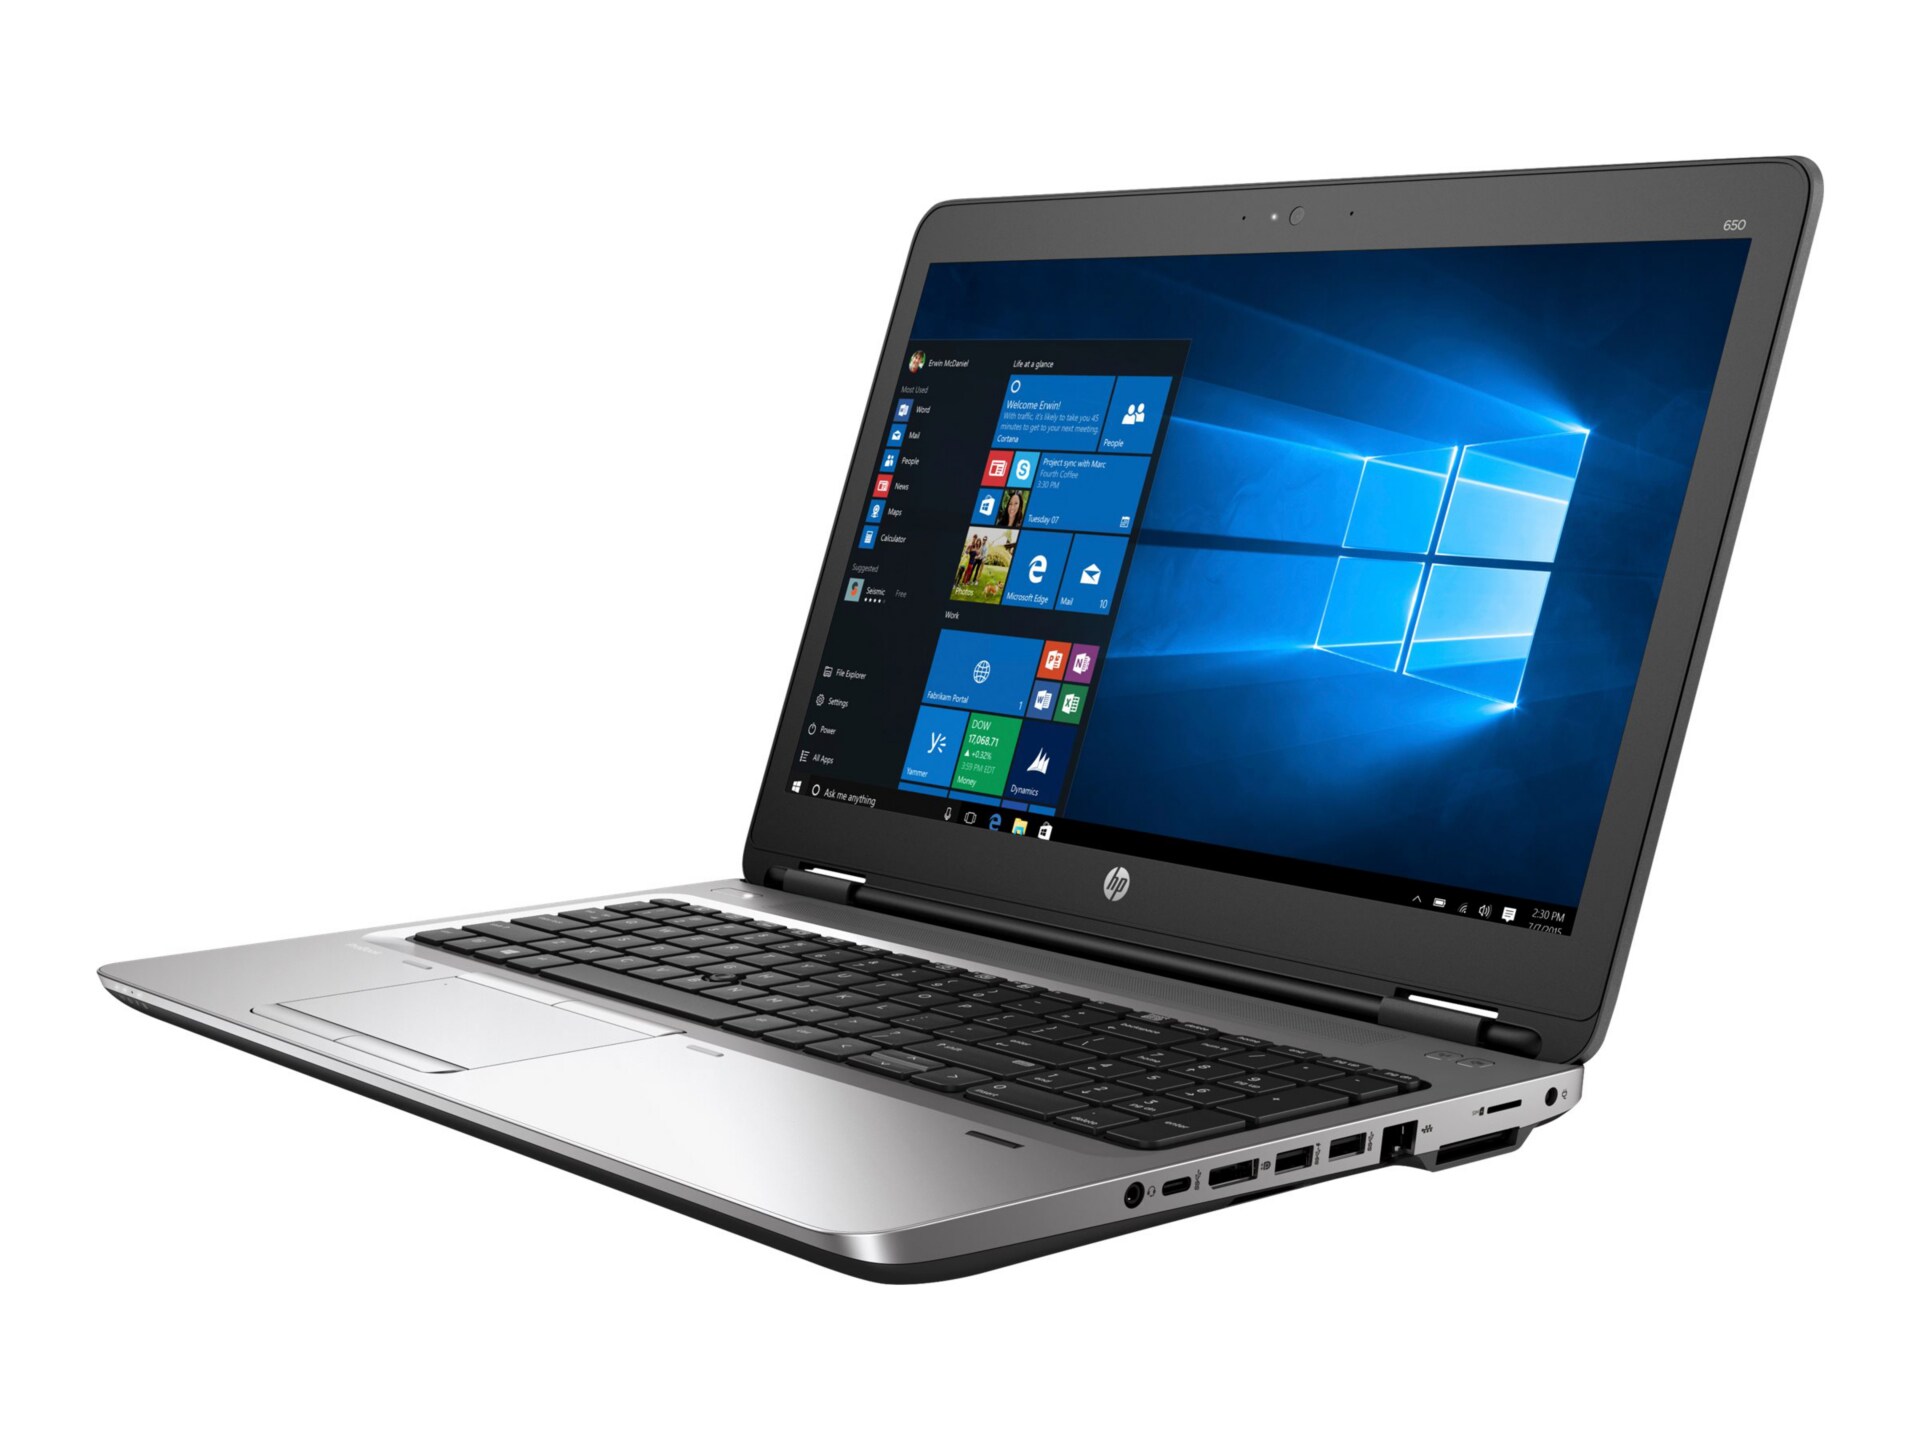 HP ProBook 650 G2 - 15.6" - Core i5 6300U - 8 GB RAM - 500 GB HDD - US